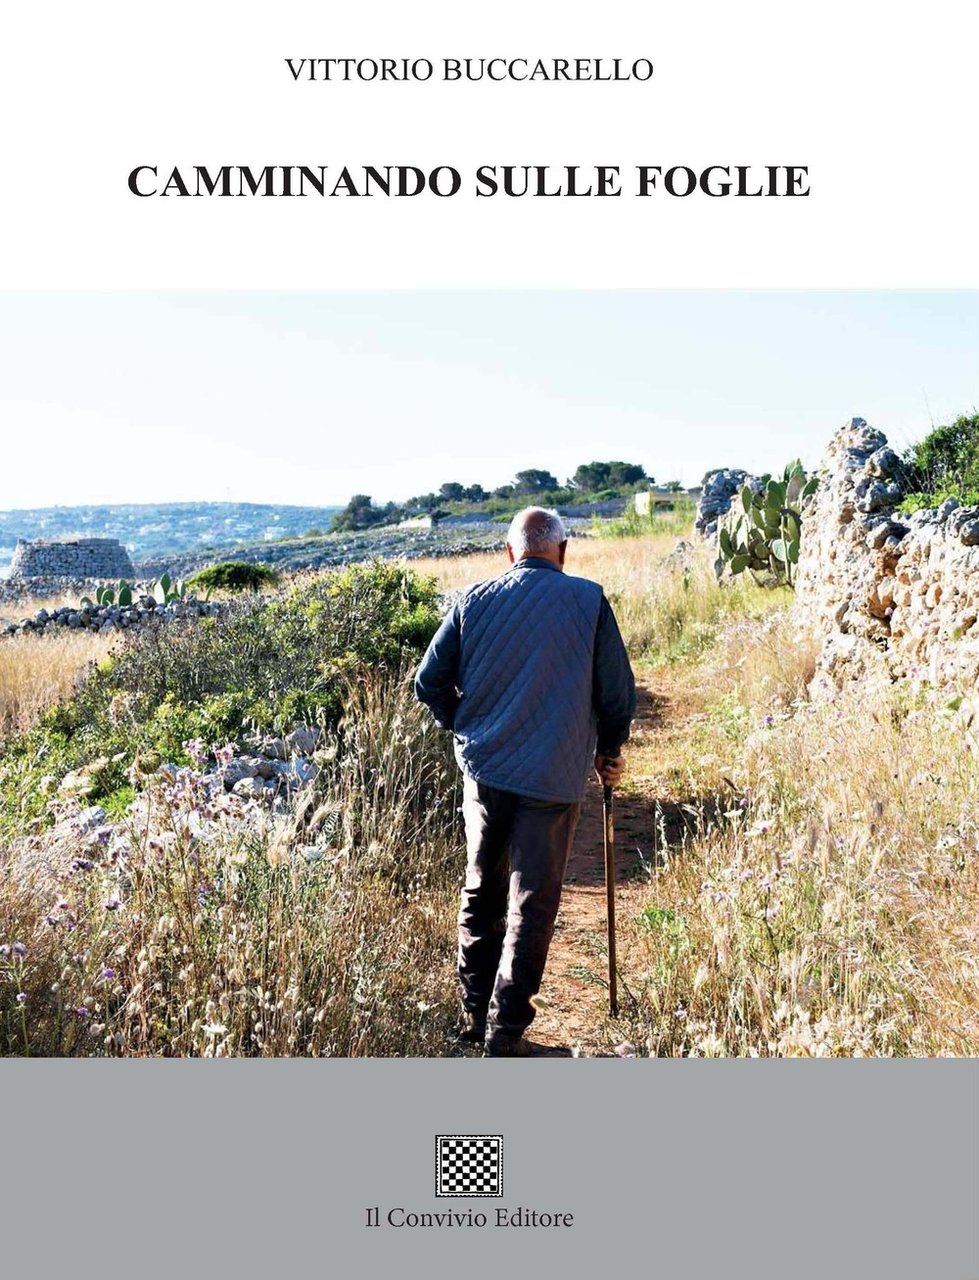 Camminando sulle foglie, Castiglione di Sicilia, Il Convivio Editore, 2021